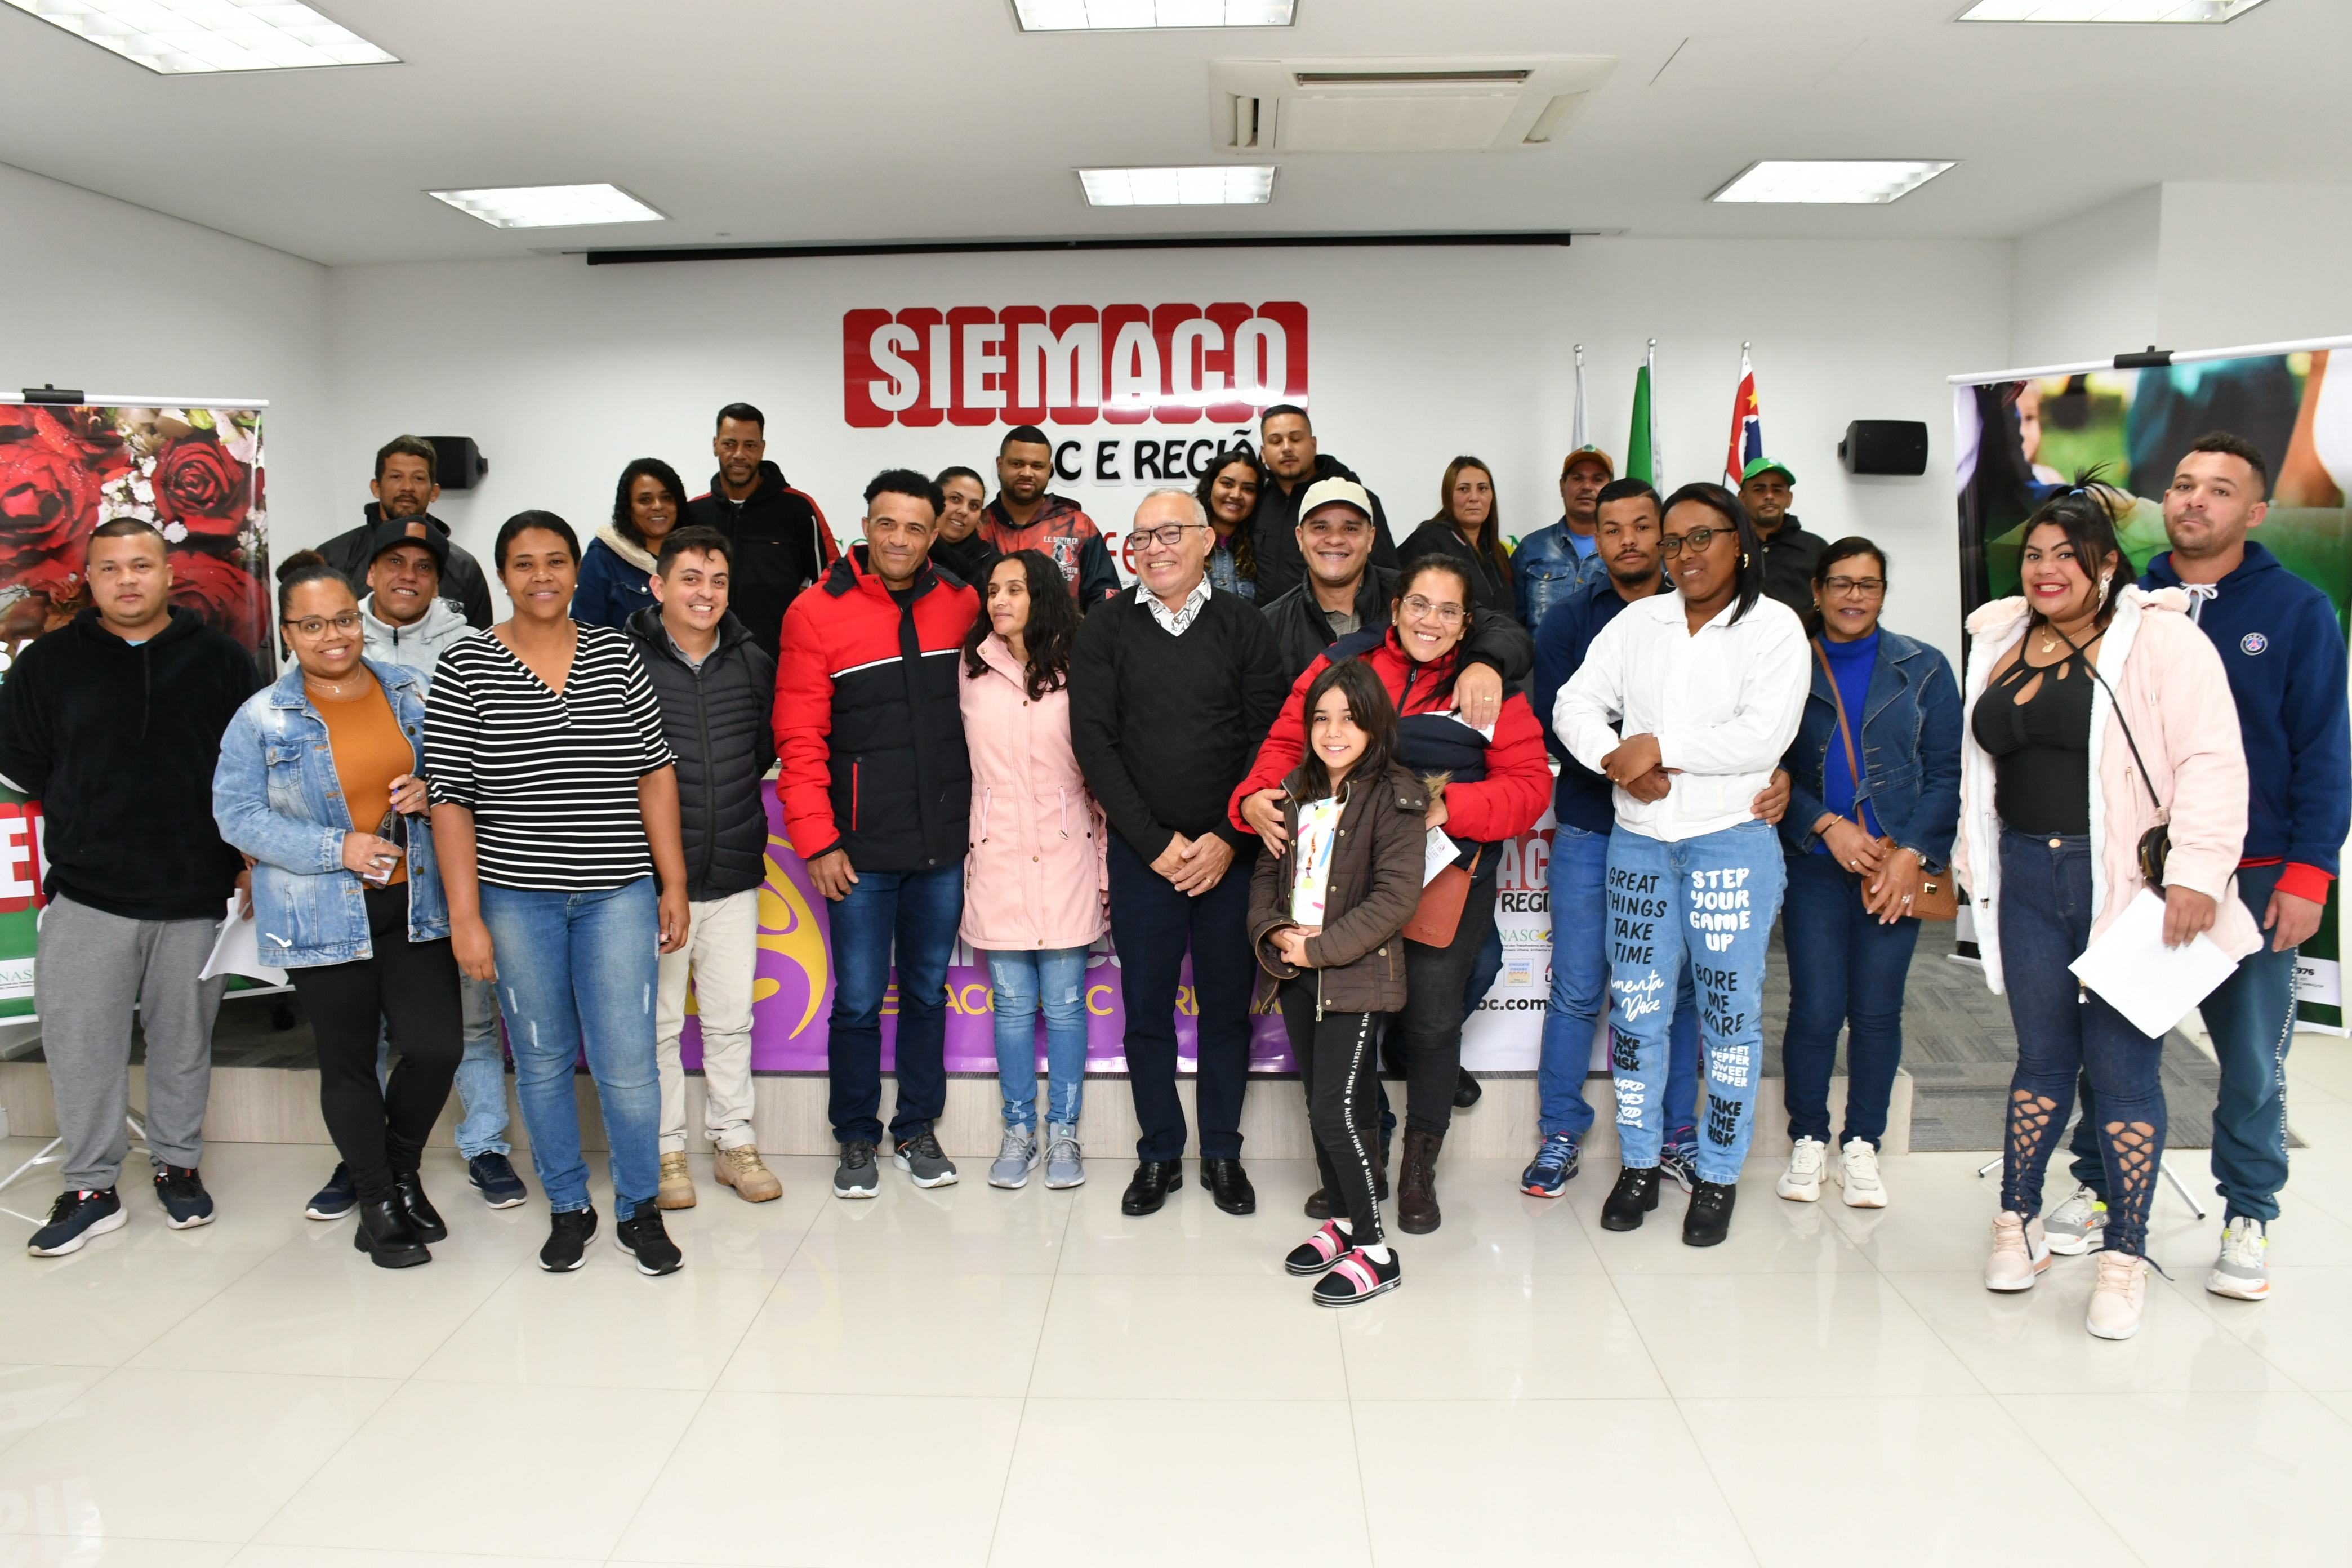 SIEMACO ABC E REGIÃO realiza sorteio para a 2ª edição do “Casamento Sócio Sindical”